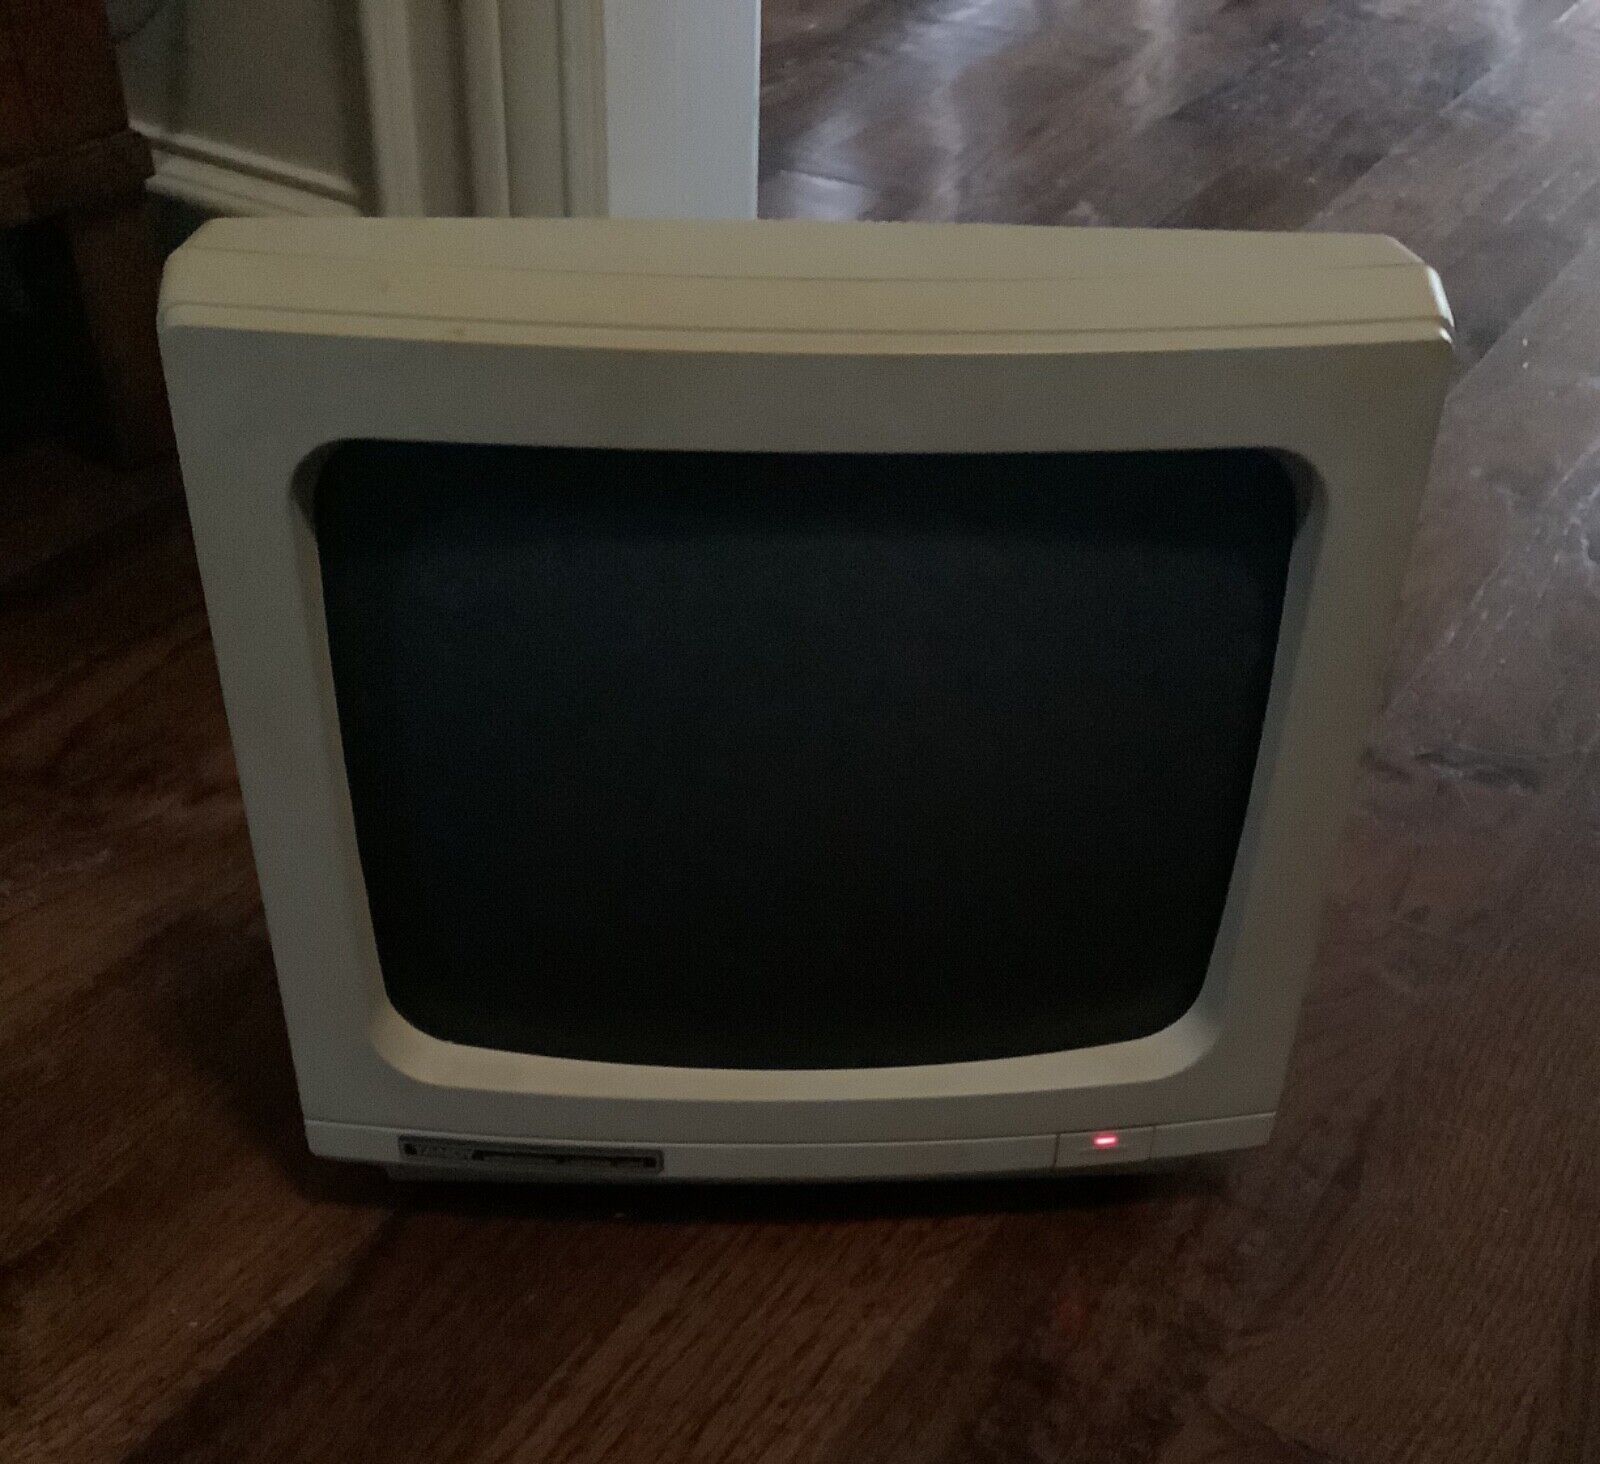 Vintage tandy computer in original box